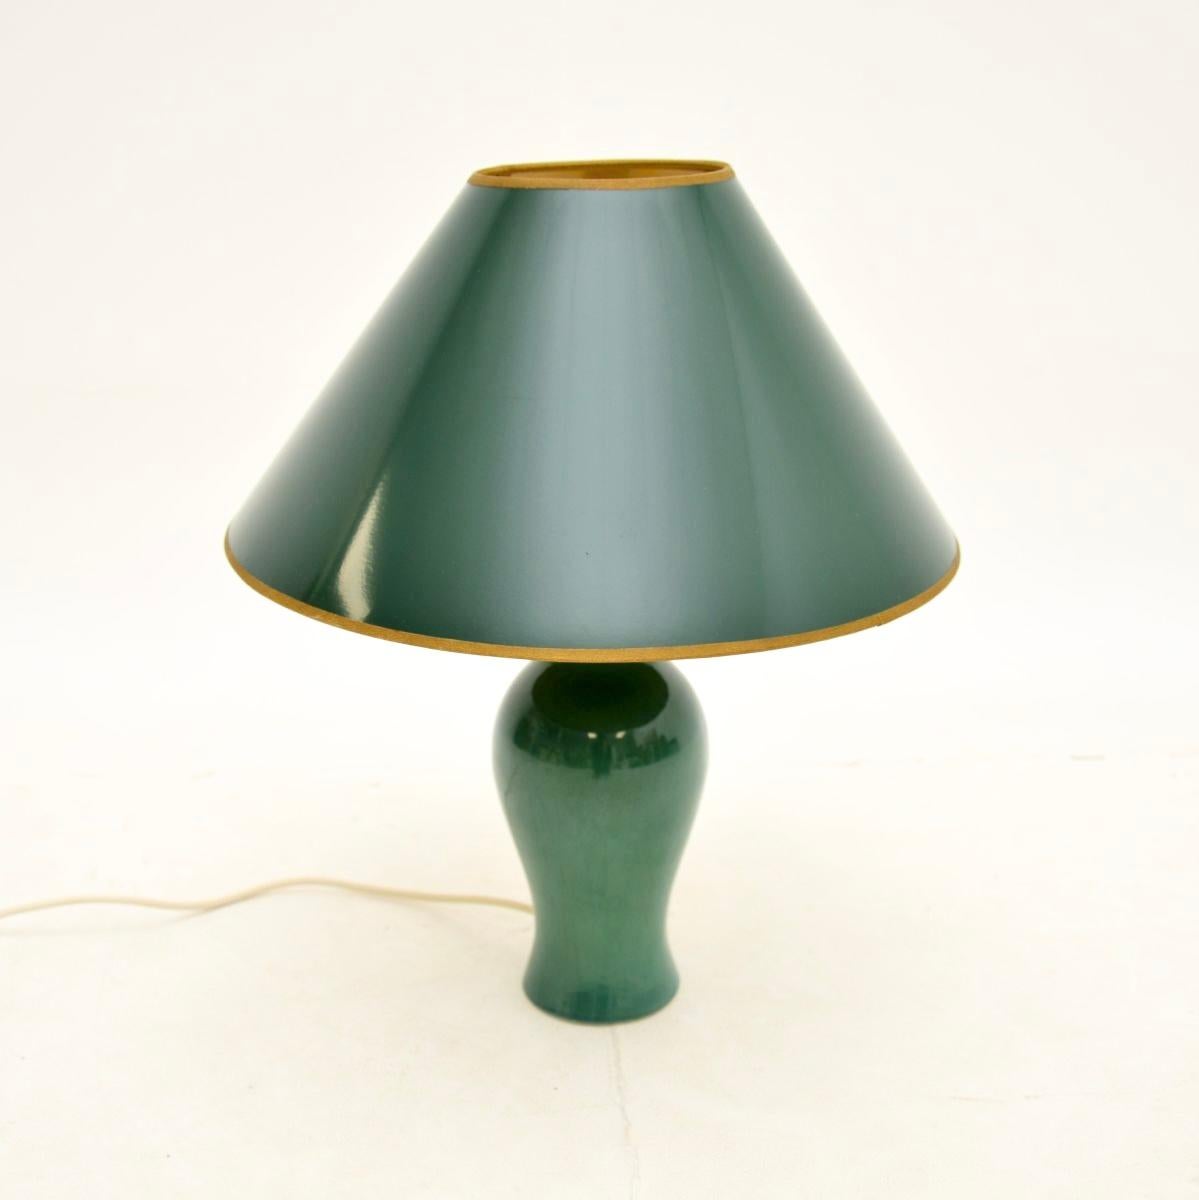 Une magnifique lampe de table vintage en céramique, fabriquée en Angleterre et datant des années 1970.

Il a une superbe glaçure verte, une belle forme et une belle taille. L'abat-jour conique vert est d'origine et complète très bien la